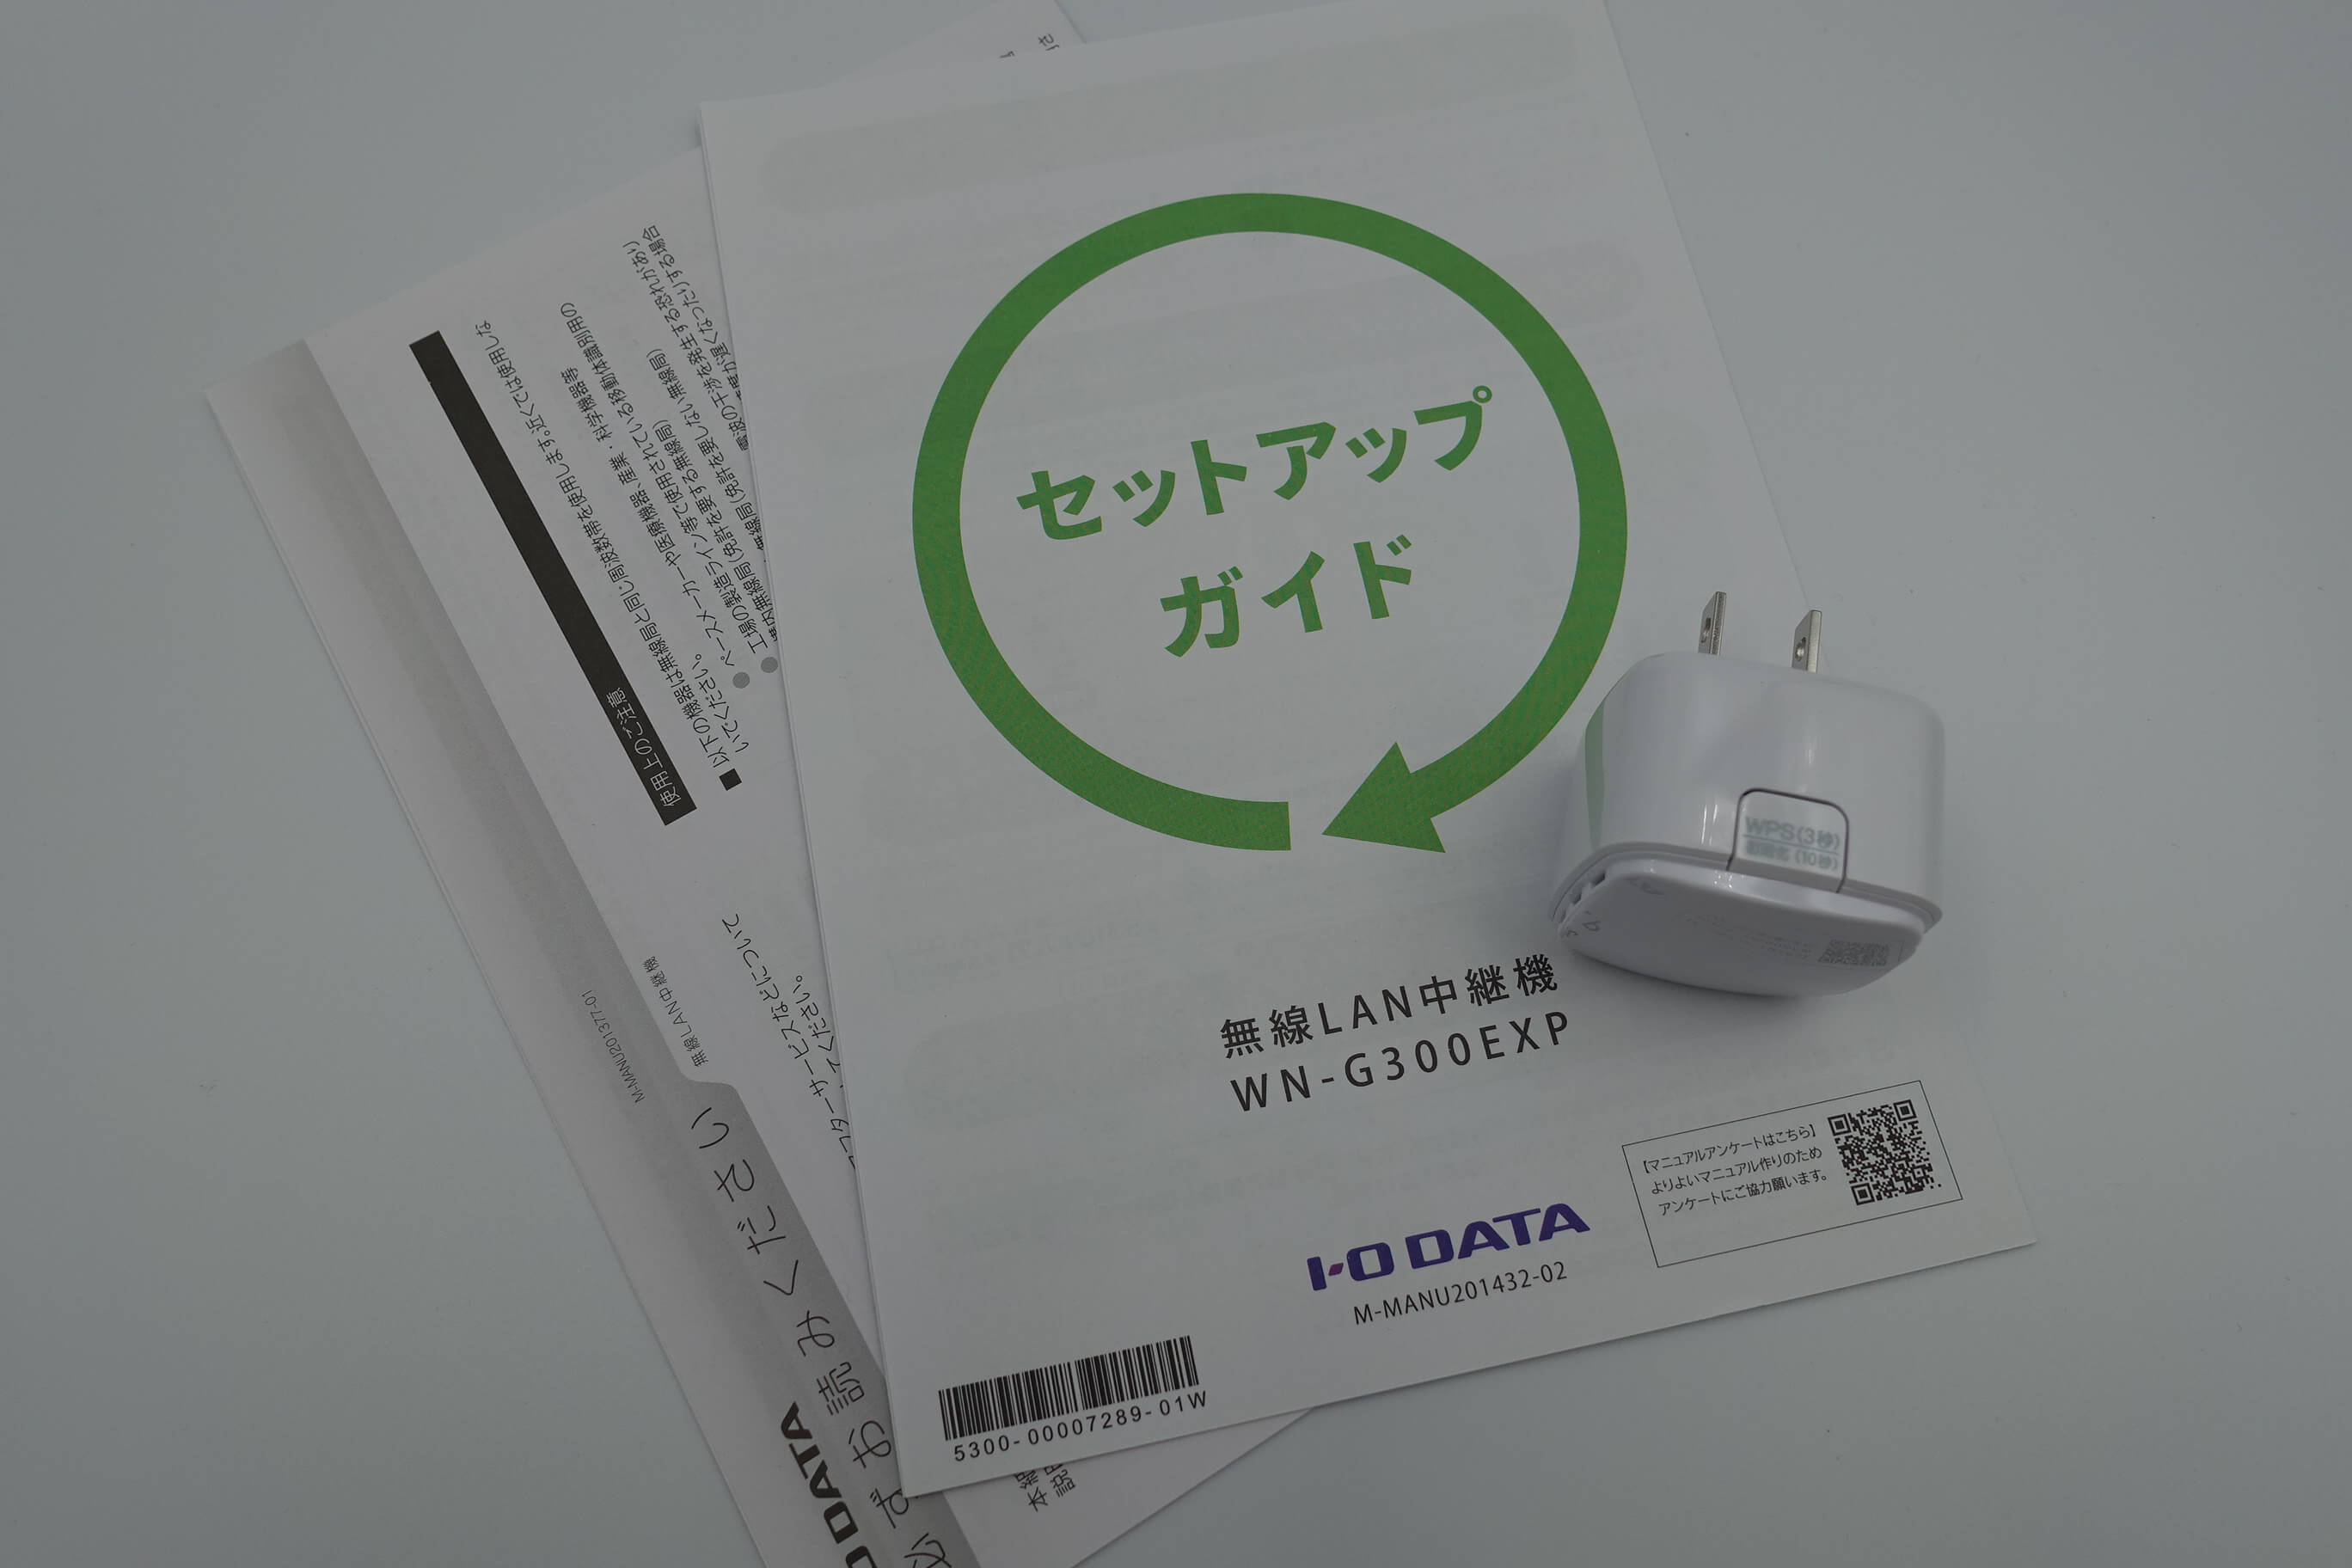 ニンテンドースイッチ】WiFiの掴みが絶望的に弱いのでWiFi中継器を購入してみてた話 | natuyuki.com